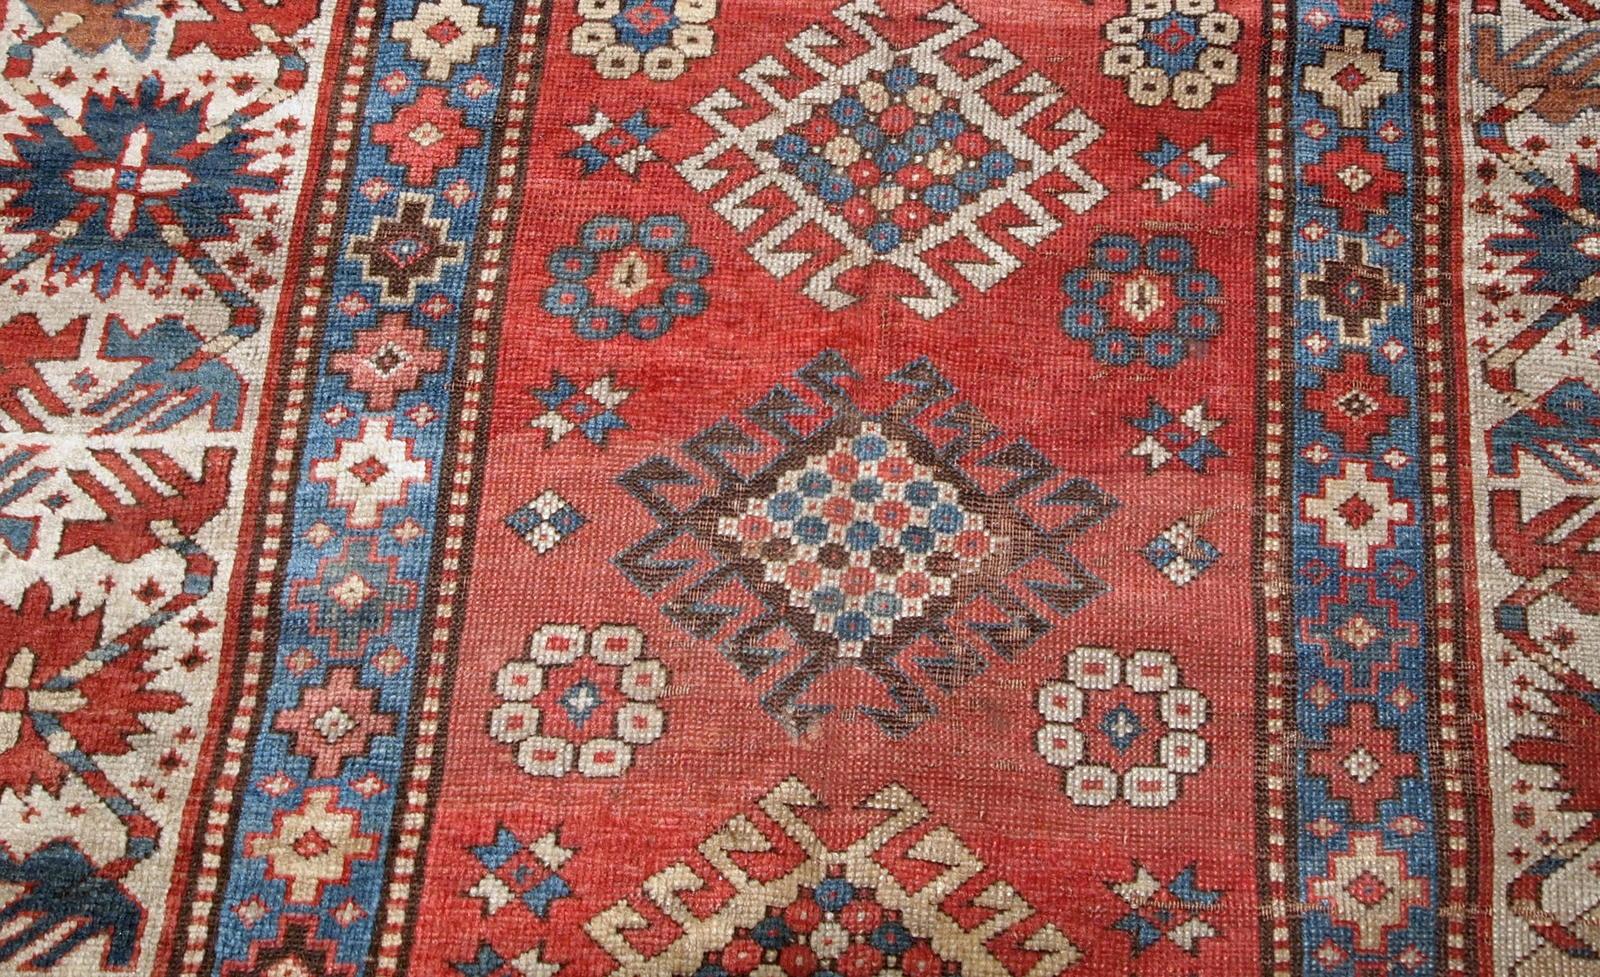 Handgefertigter antiker kaukasischer Kazak-Teppich in Rot- und Beigetönen. Der Teppich stammt aus dem Ende des 19. Jahrhunderts und ist im Originalzustand, er hat einen niedrigen Flor und einen kleinen Schnitt auf einer Seite.

-zustand: original,